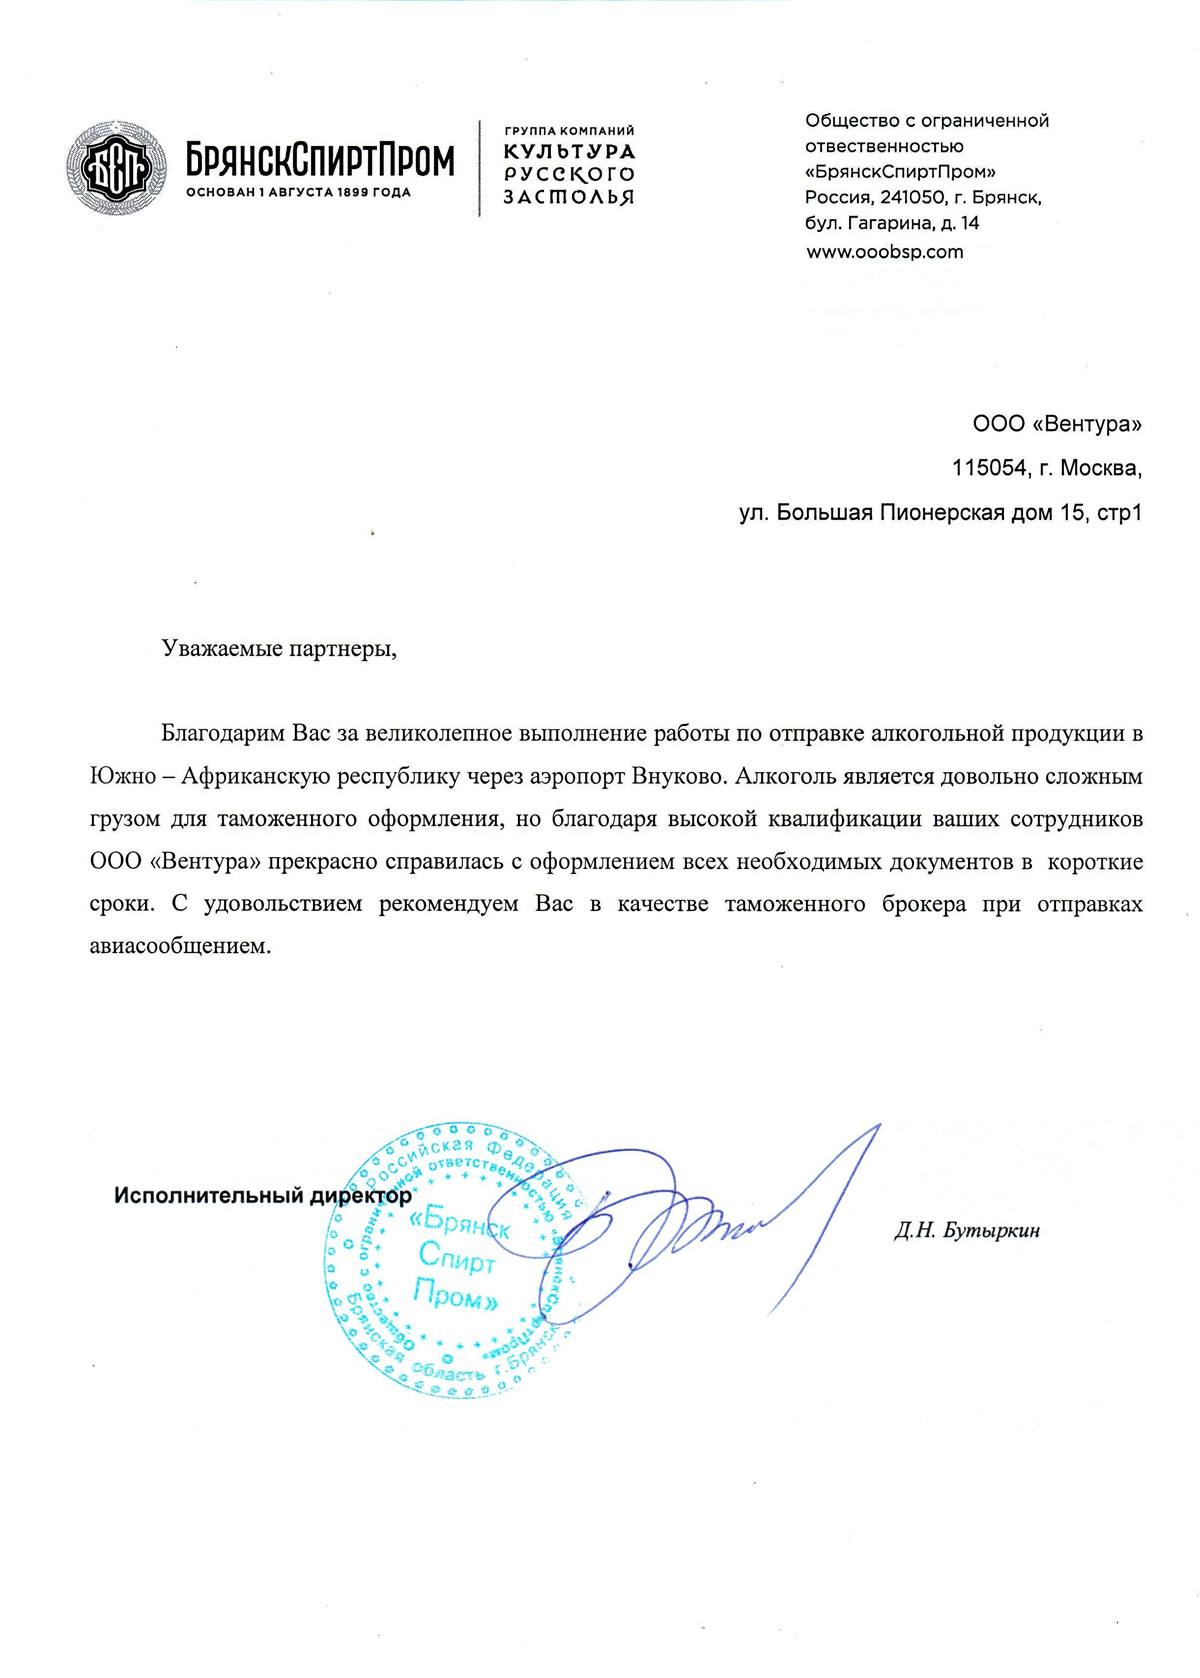 БрянскСпиртПром благодарит за выполнение работ по экспорту алкогольной продукции во Внуково